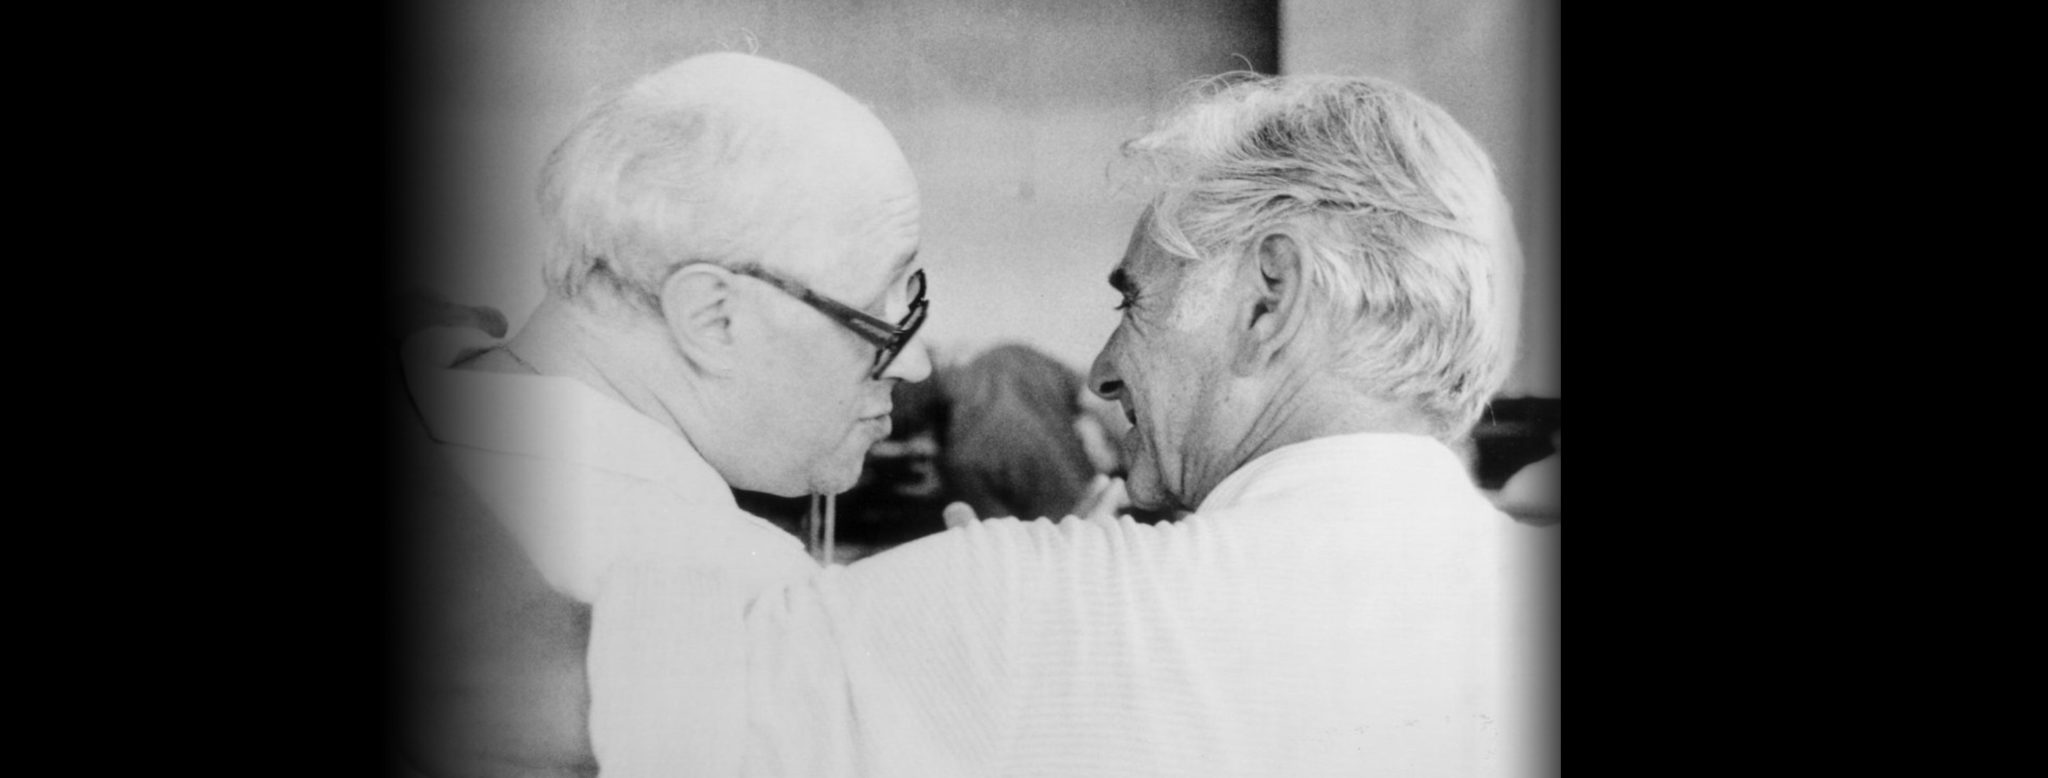 Mstislav "Slava" Rostropovich and Leonard Bernstein. Credit: Richard Braaten, 1978 / The Kennedy Center.